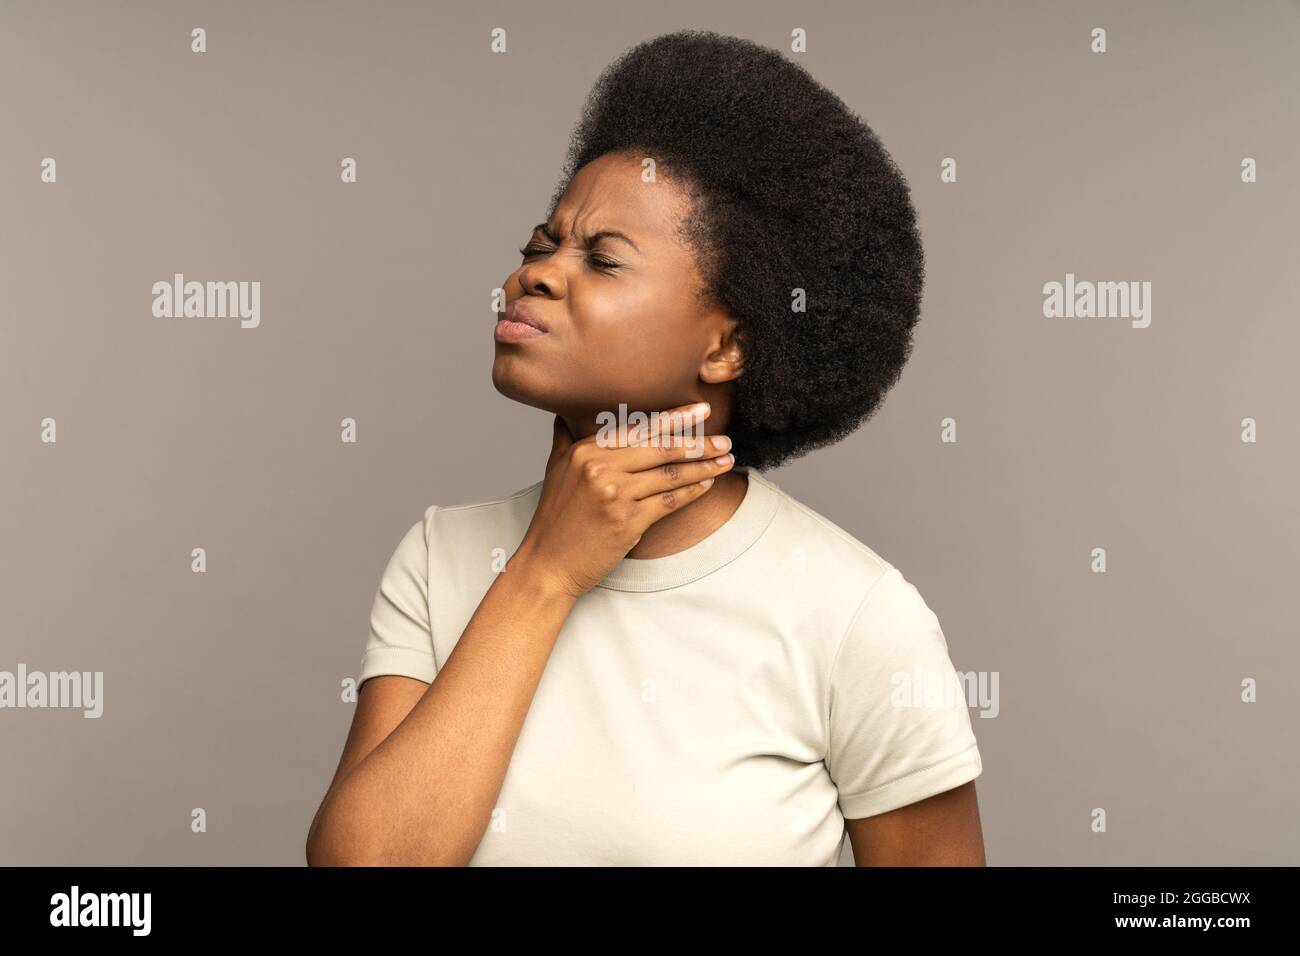 Afro femme ayant mal à la gorge, amygdalite, souffrant de douleurs à la déglutition, forte douleur dans la gorge Banque D'Images